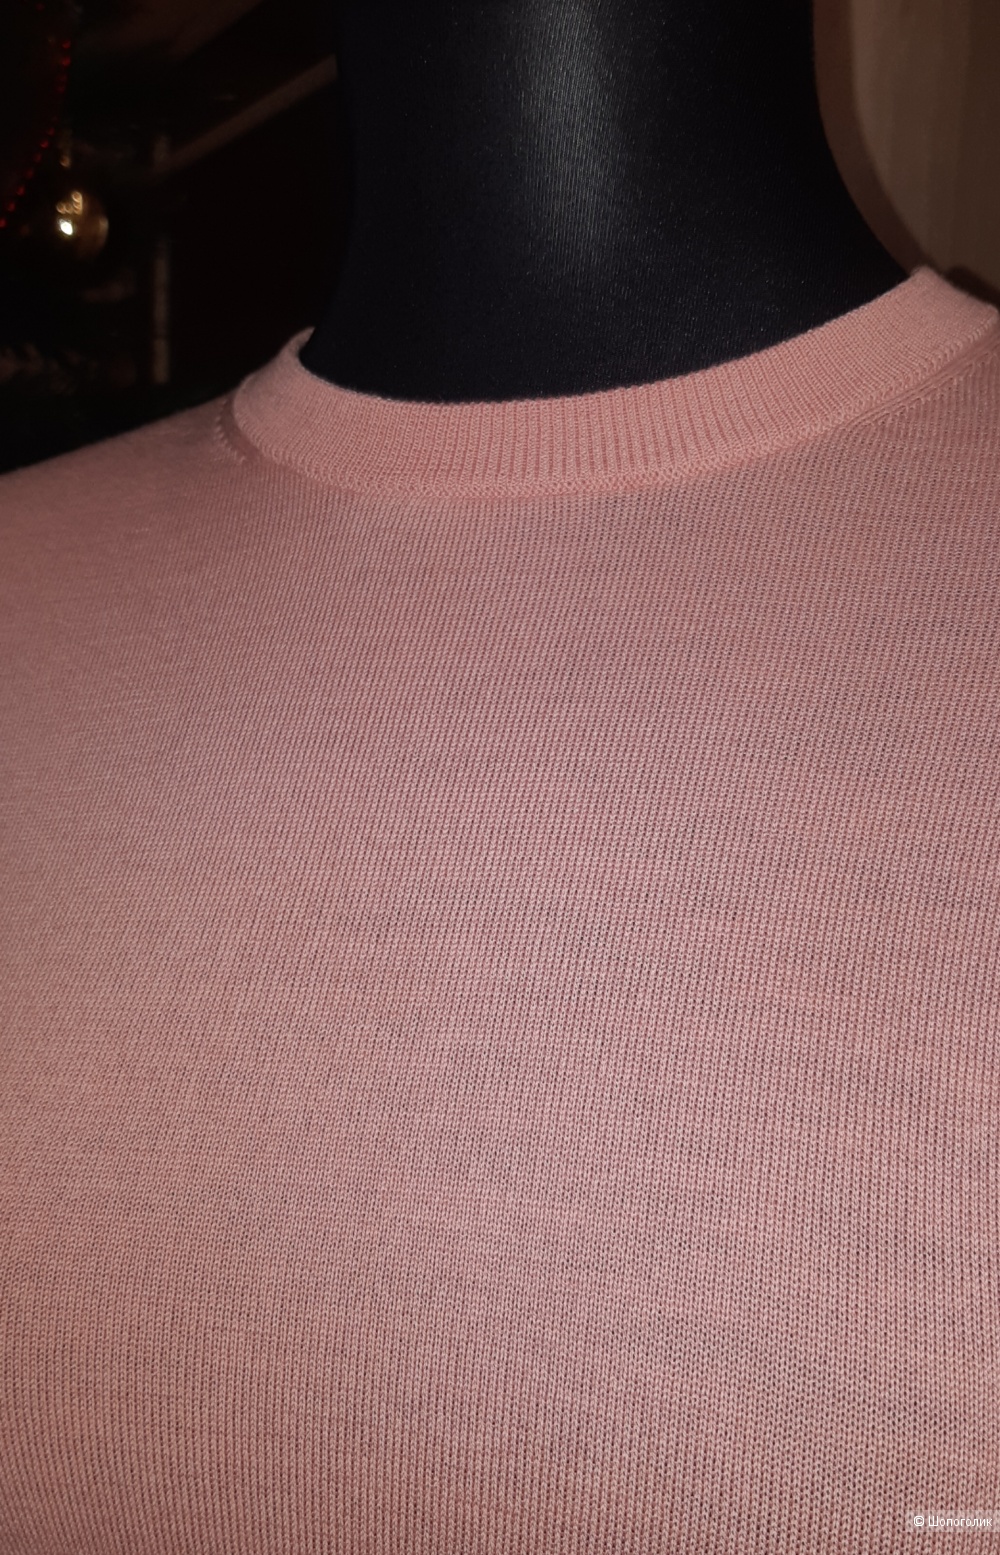 Шерстяной пуловер uniqlo, размер s/xs